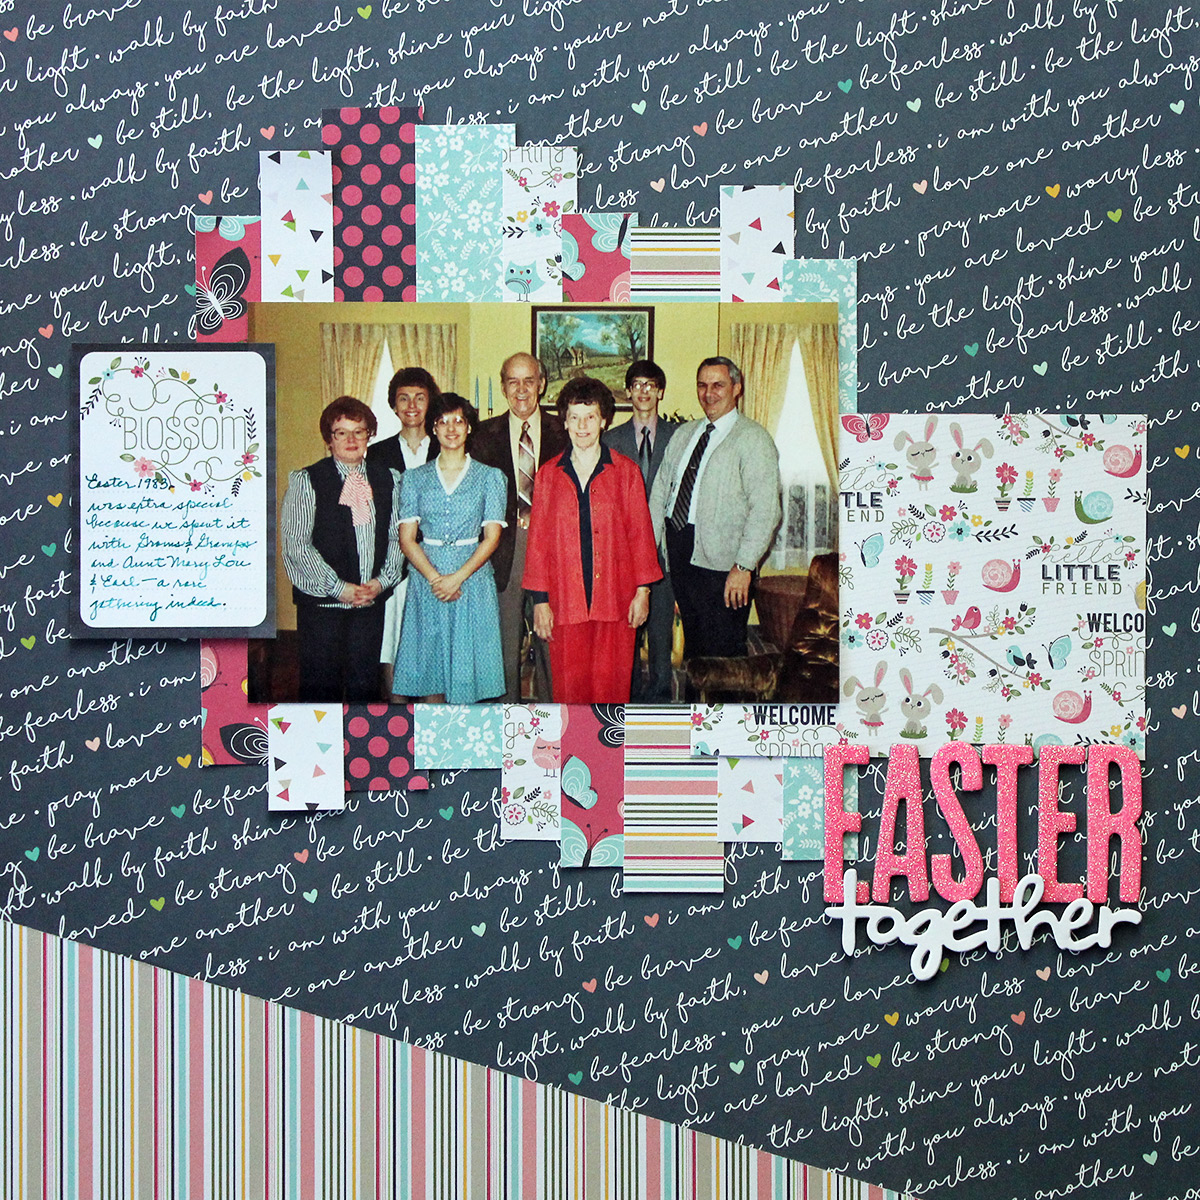 Easter together 1983